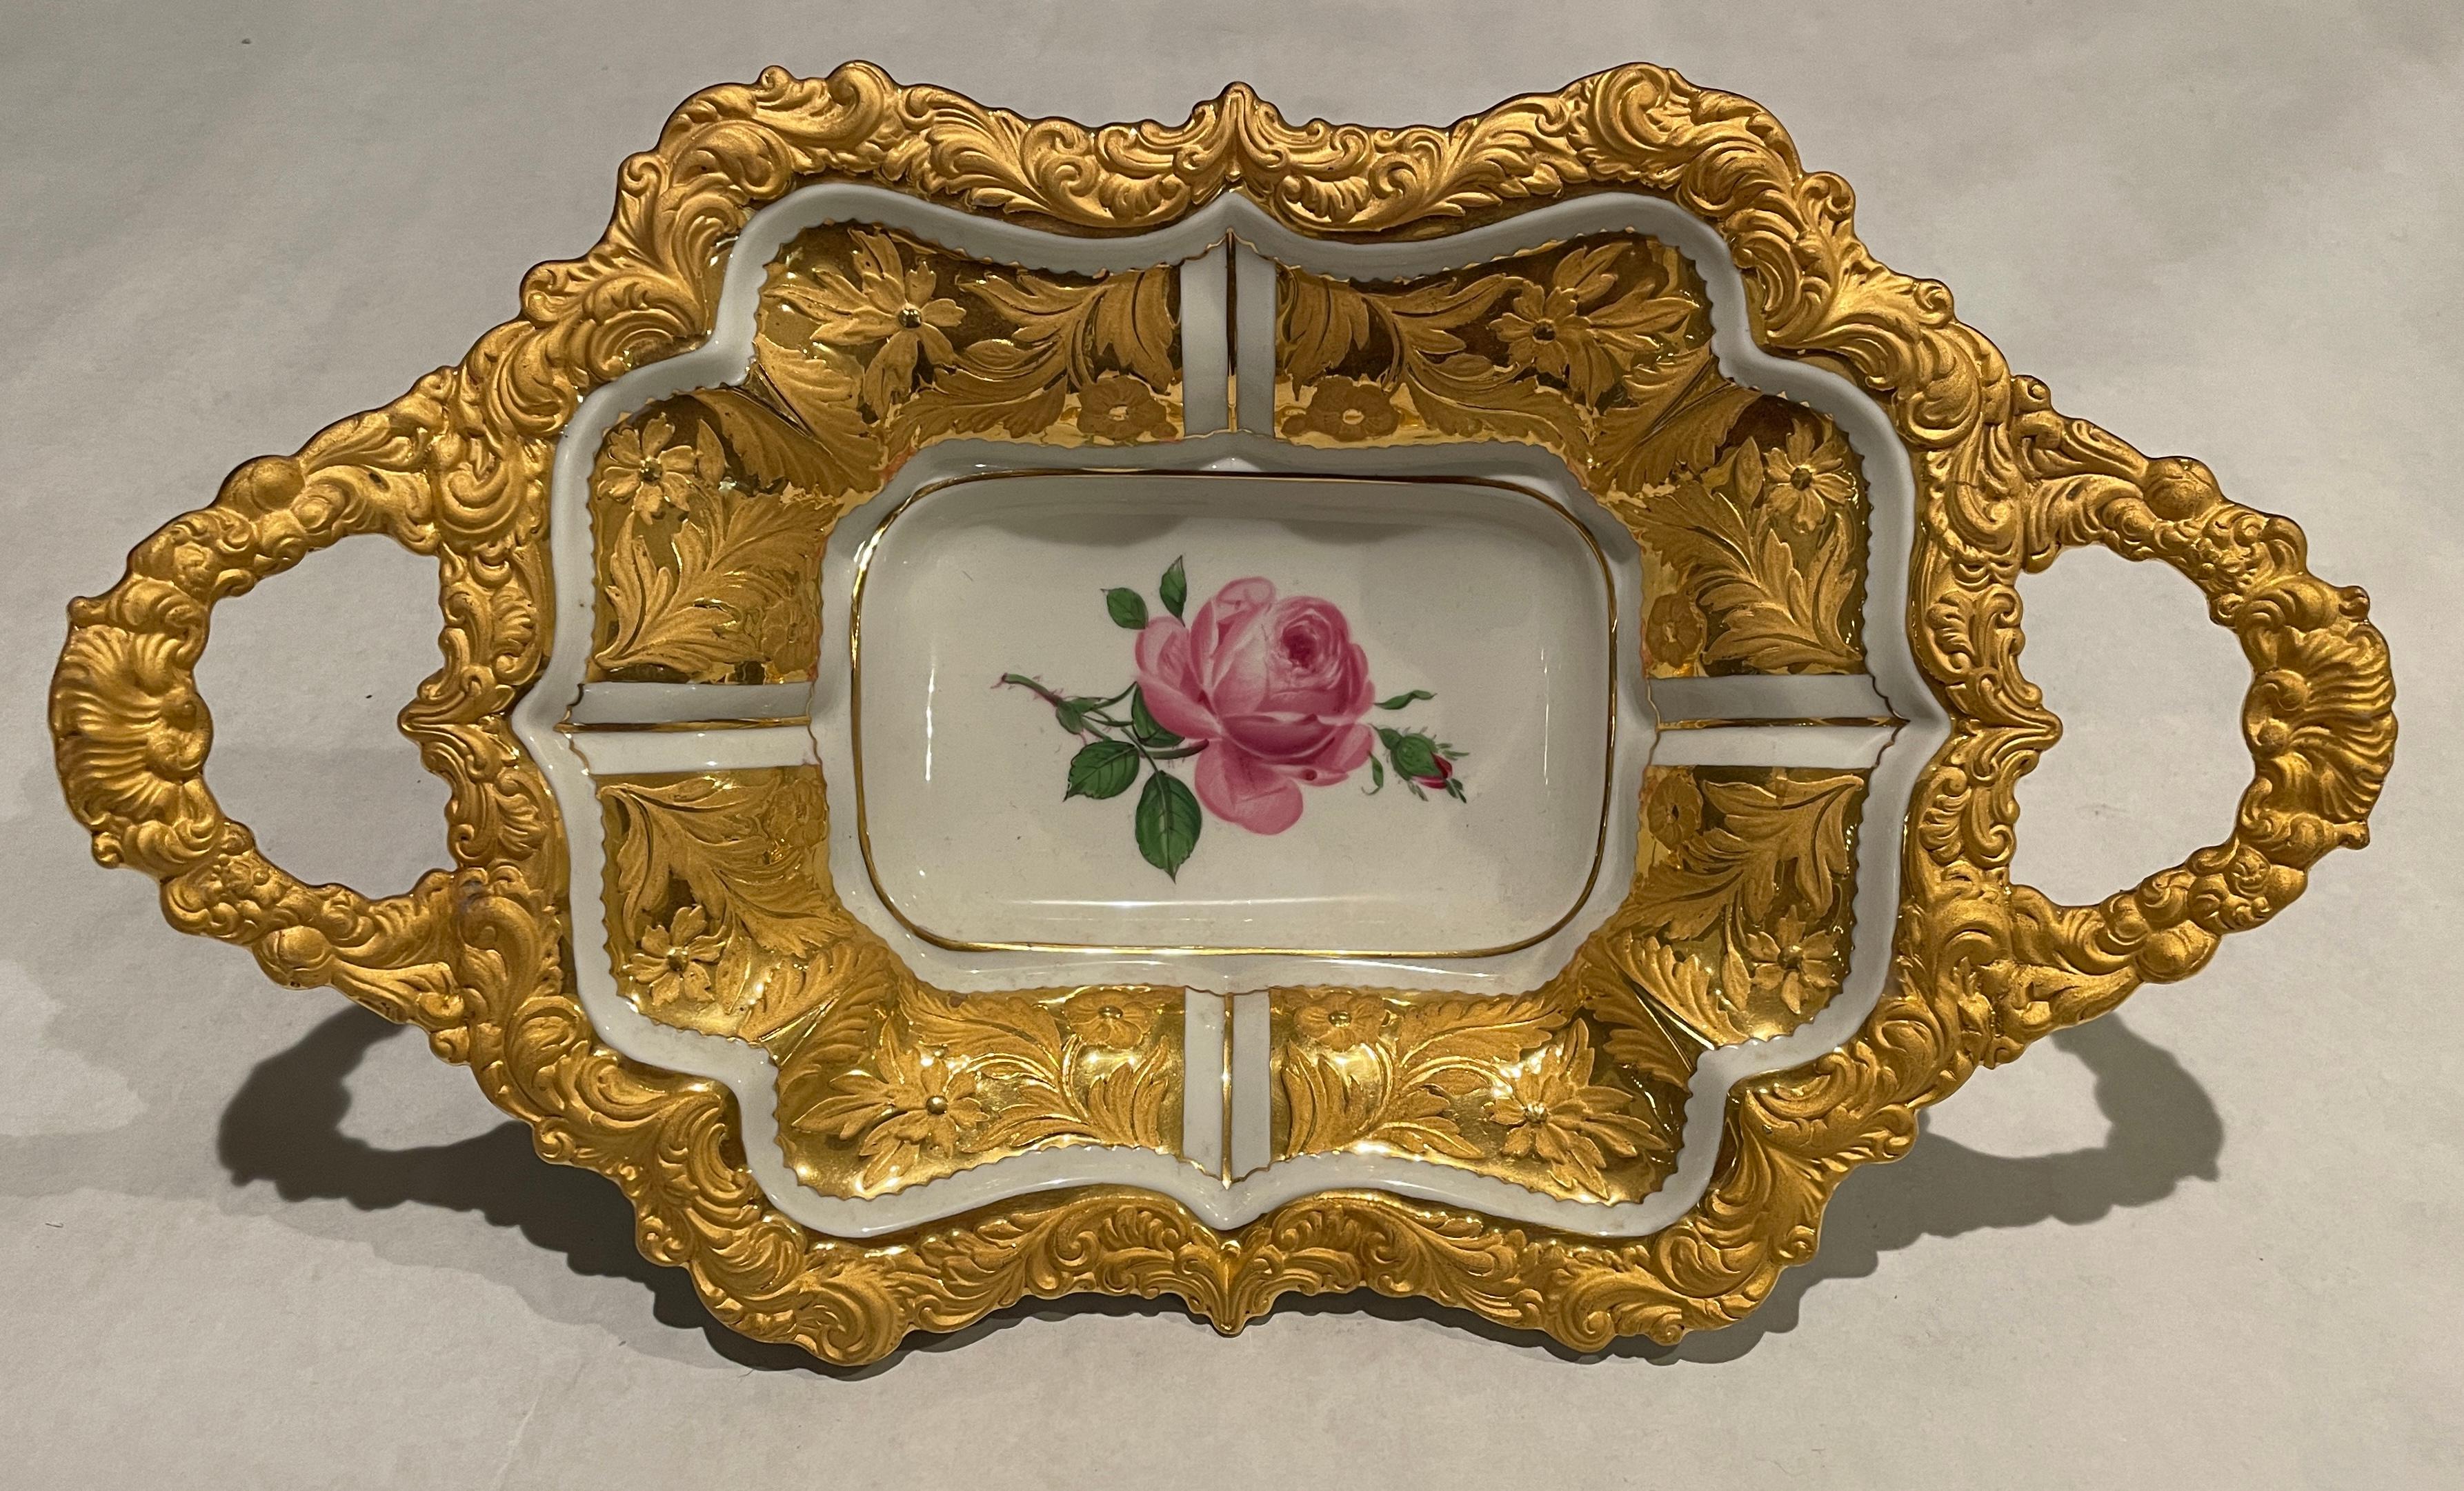 Stark vergoldetes Meissener Tablett mit zwei Henkeln und einer rosafarbenen, gemalten Blume in der Mitte sowie erhabenem goldenem Blumen- und Blattdekor auf den Innenflächen, dem Rand und den Griffen. Gekreuzte Schwerter mit Punkt in der Mitte